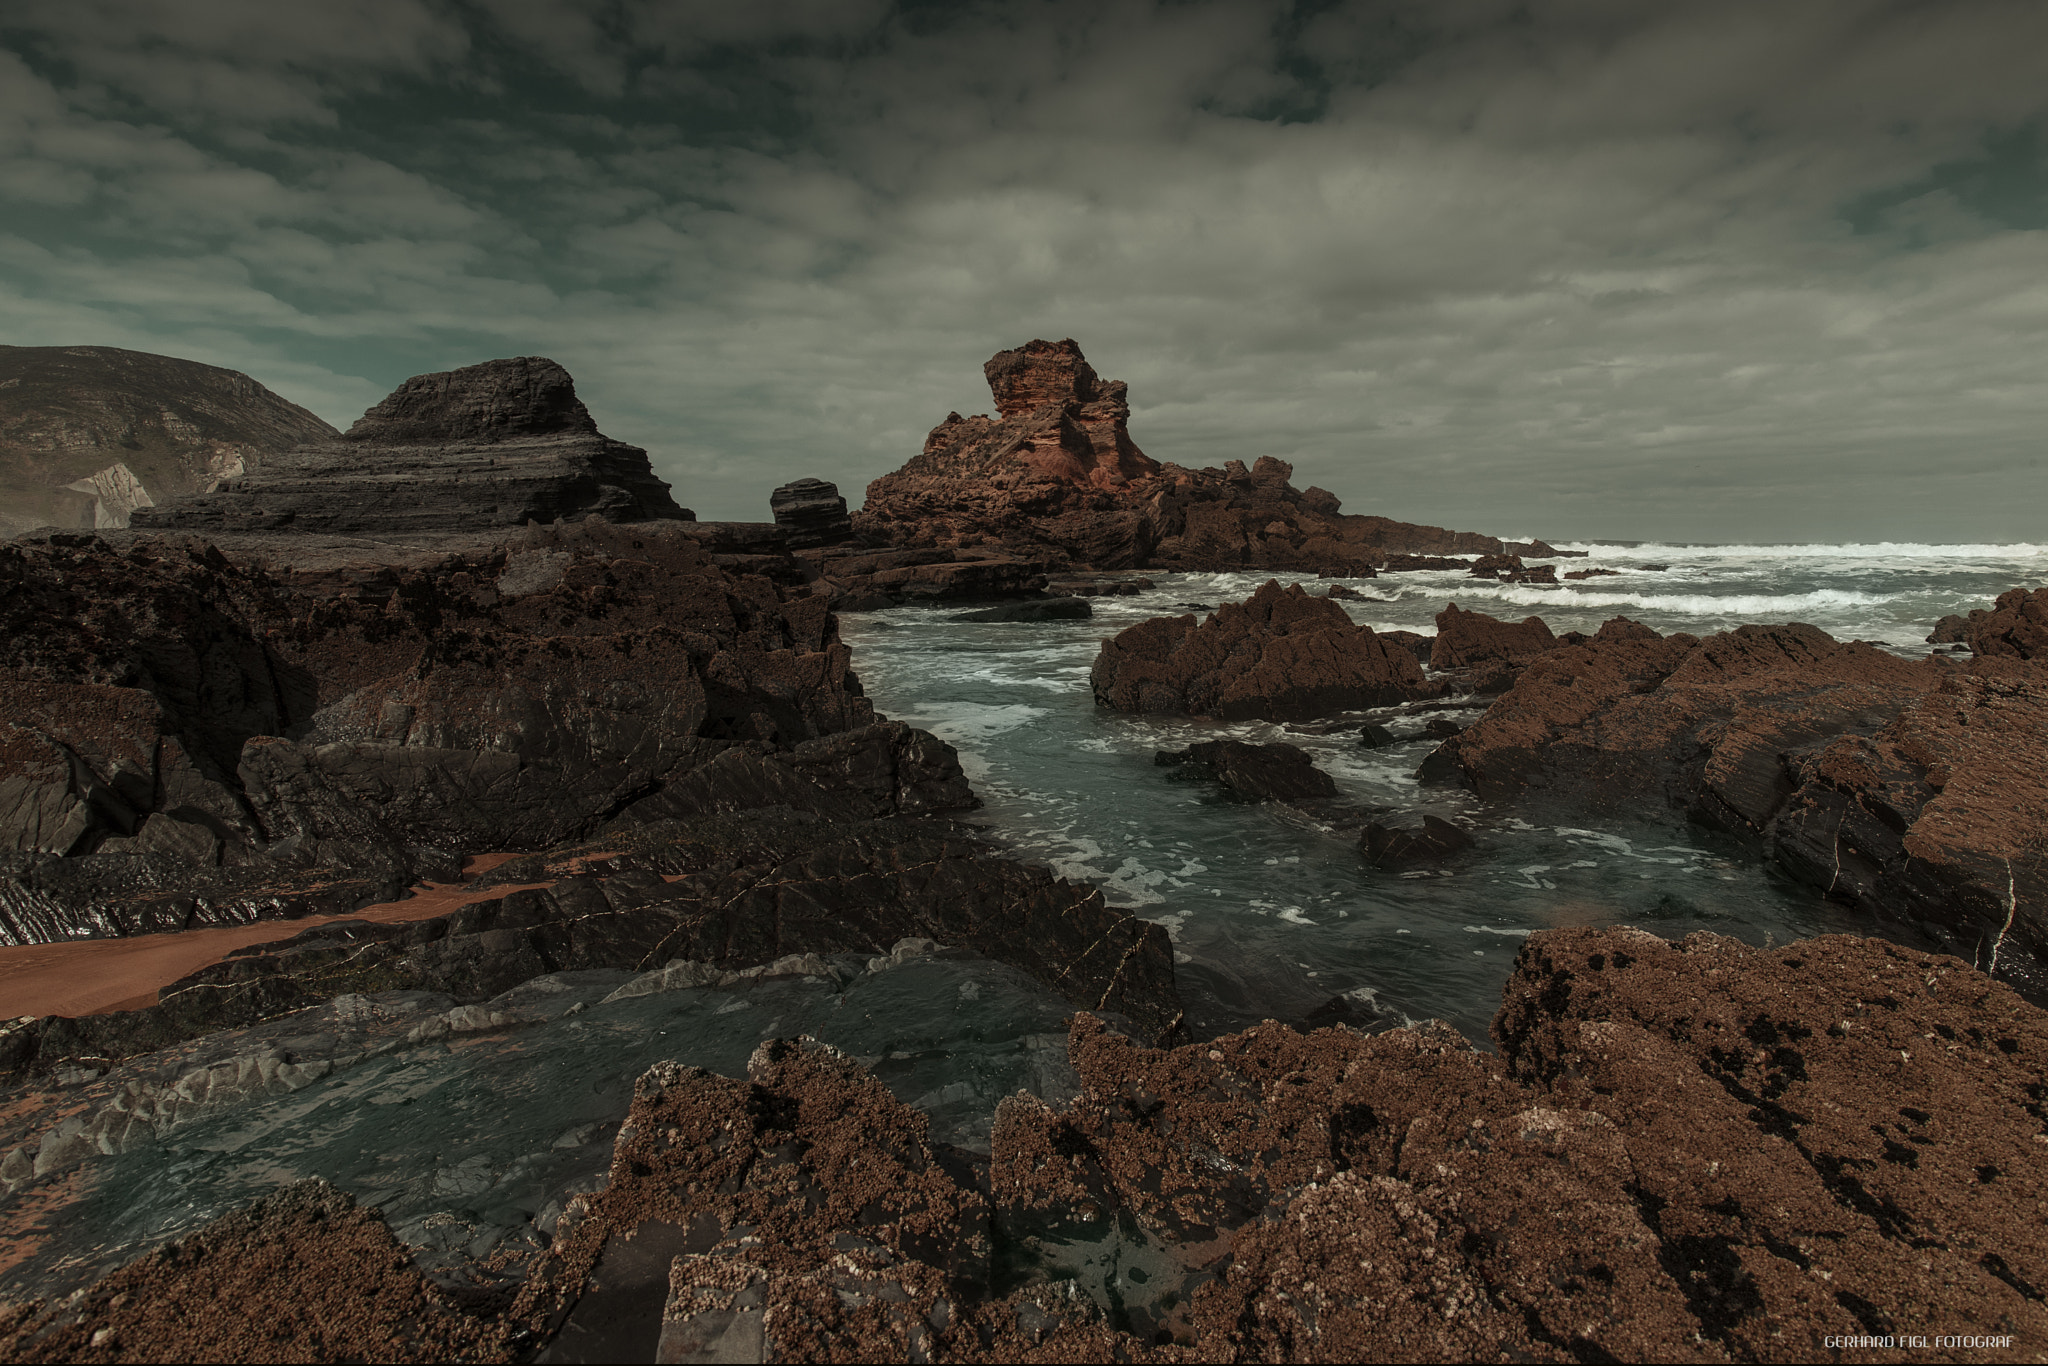 Nikon D810 + Sigma 17-35mm F2.8-4 EX DG  Aspherical HSM sample photo. Algarve seascape photography